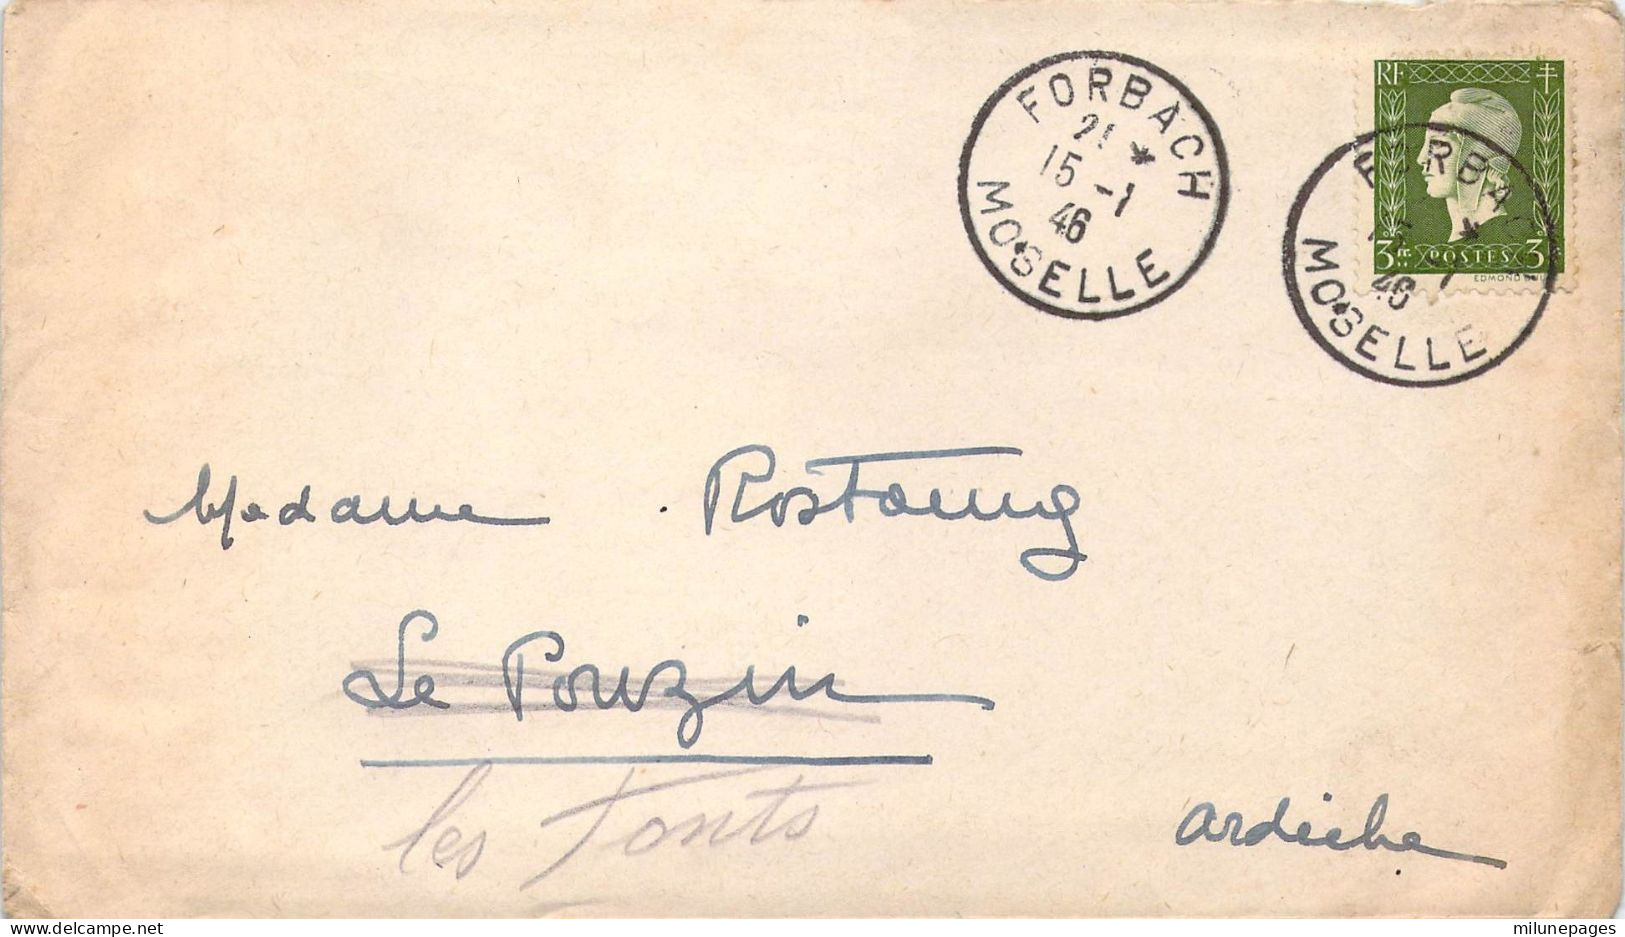 Oblitération Forbach Très Bien Frappée Sur Marianne Dulac 3 Frc Vert Seul Sur Lettre 15-1-1946 - Manual Postmarks